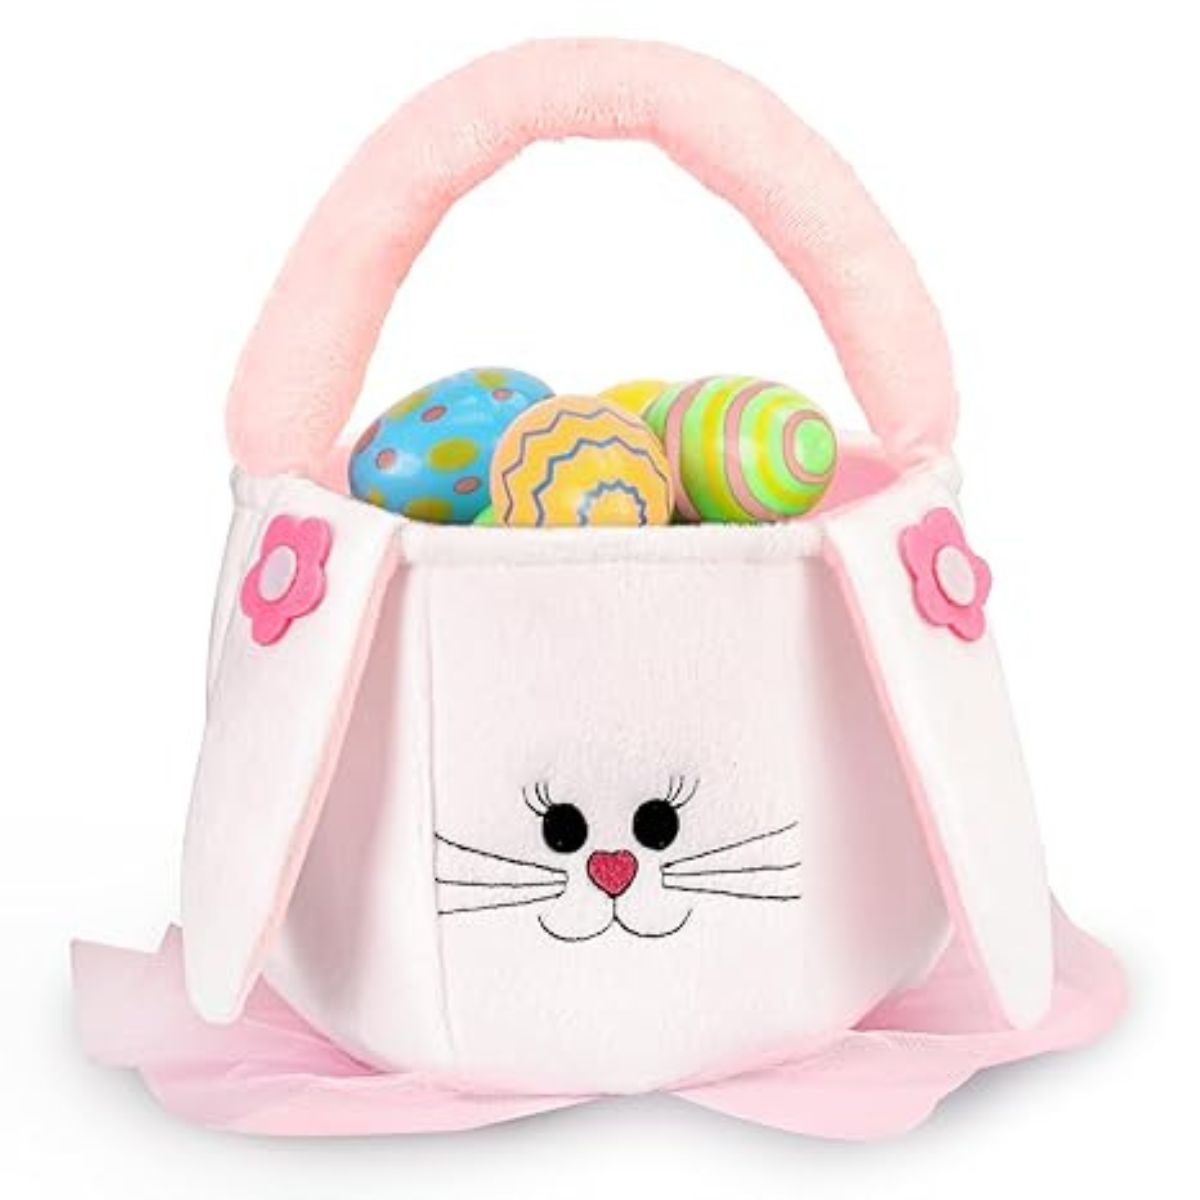 Soft Easter Bunny Basket